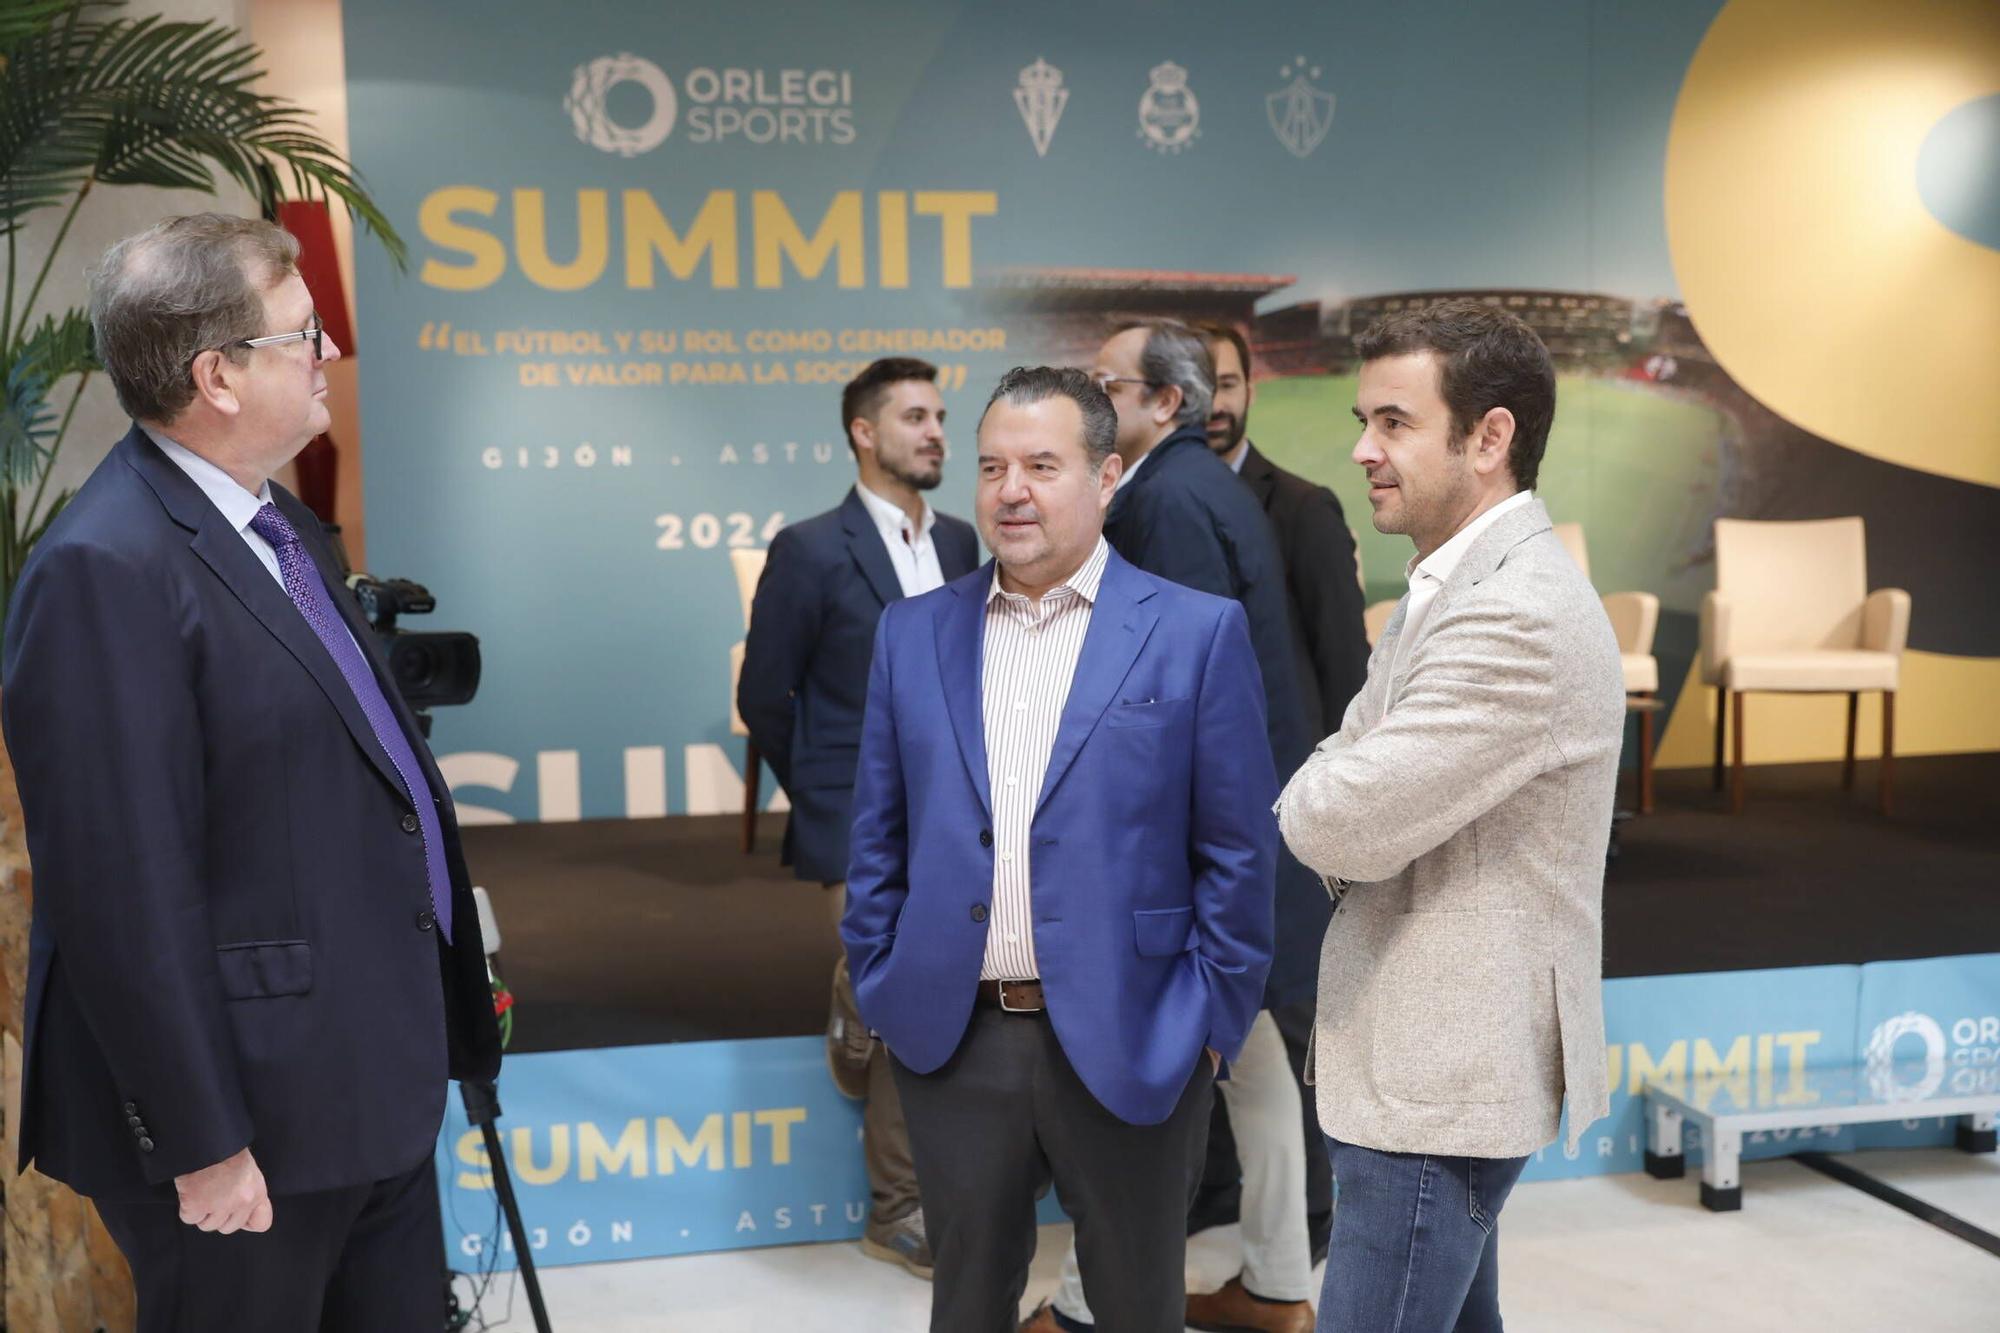 Así fue el el Summit Internacional organizado por Orlegi en Gijón